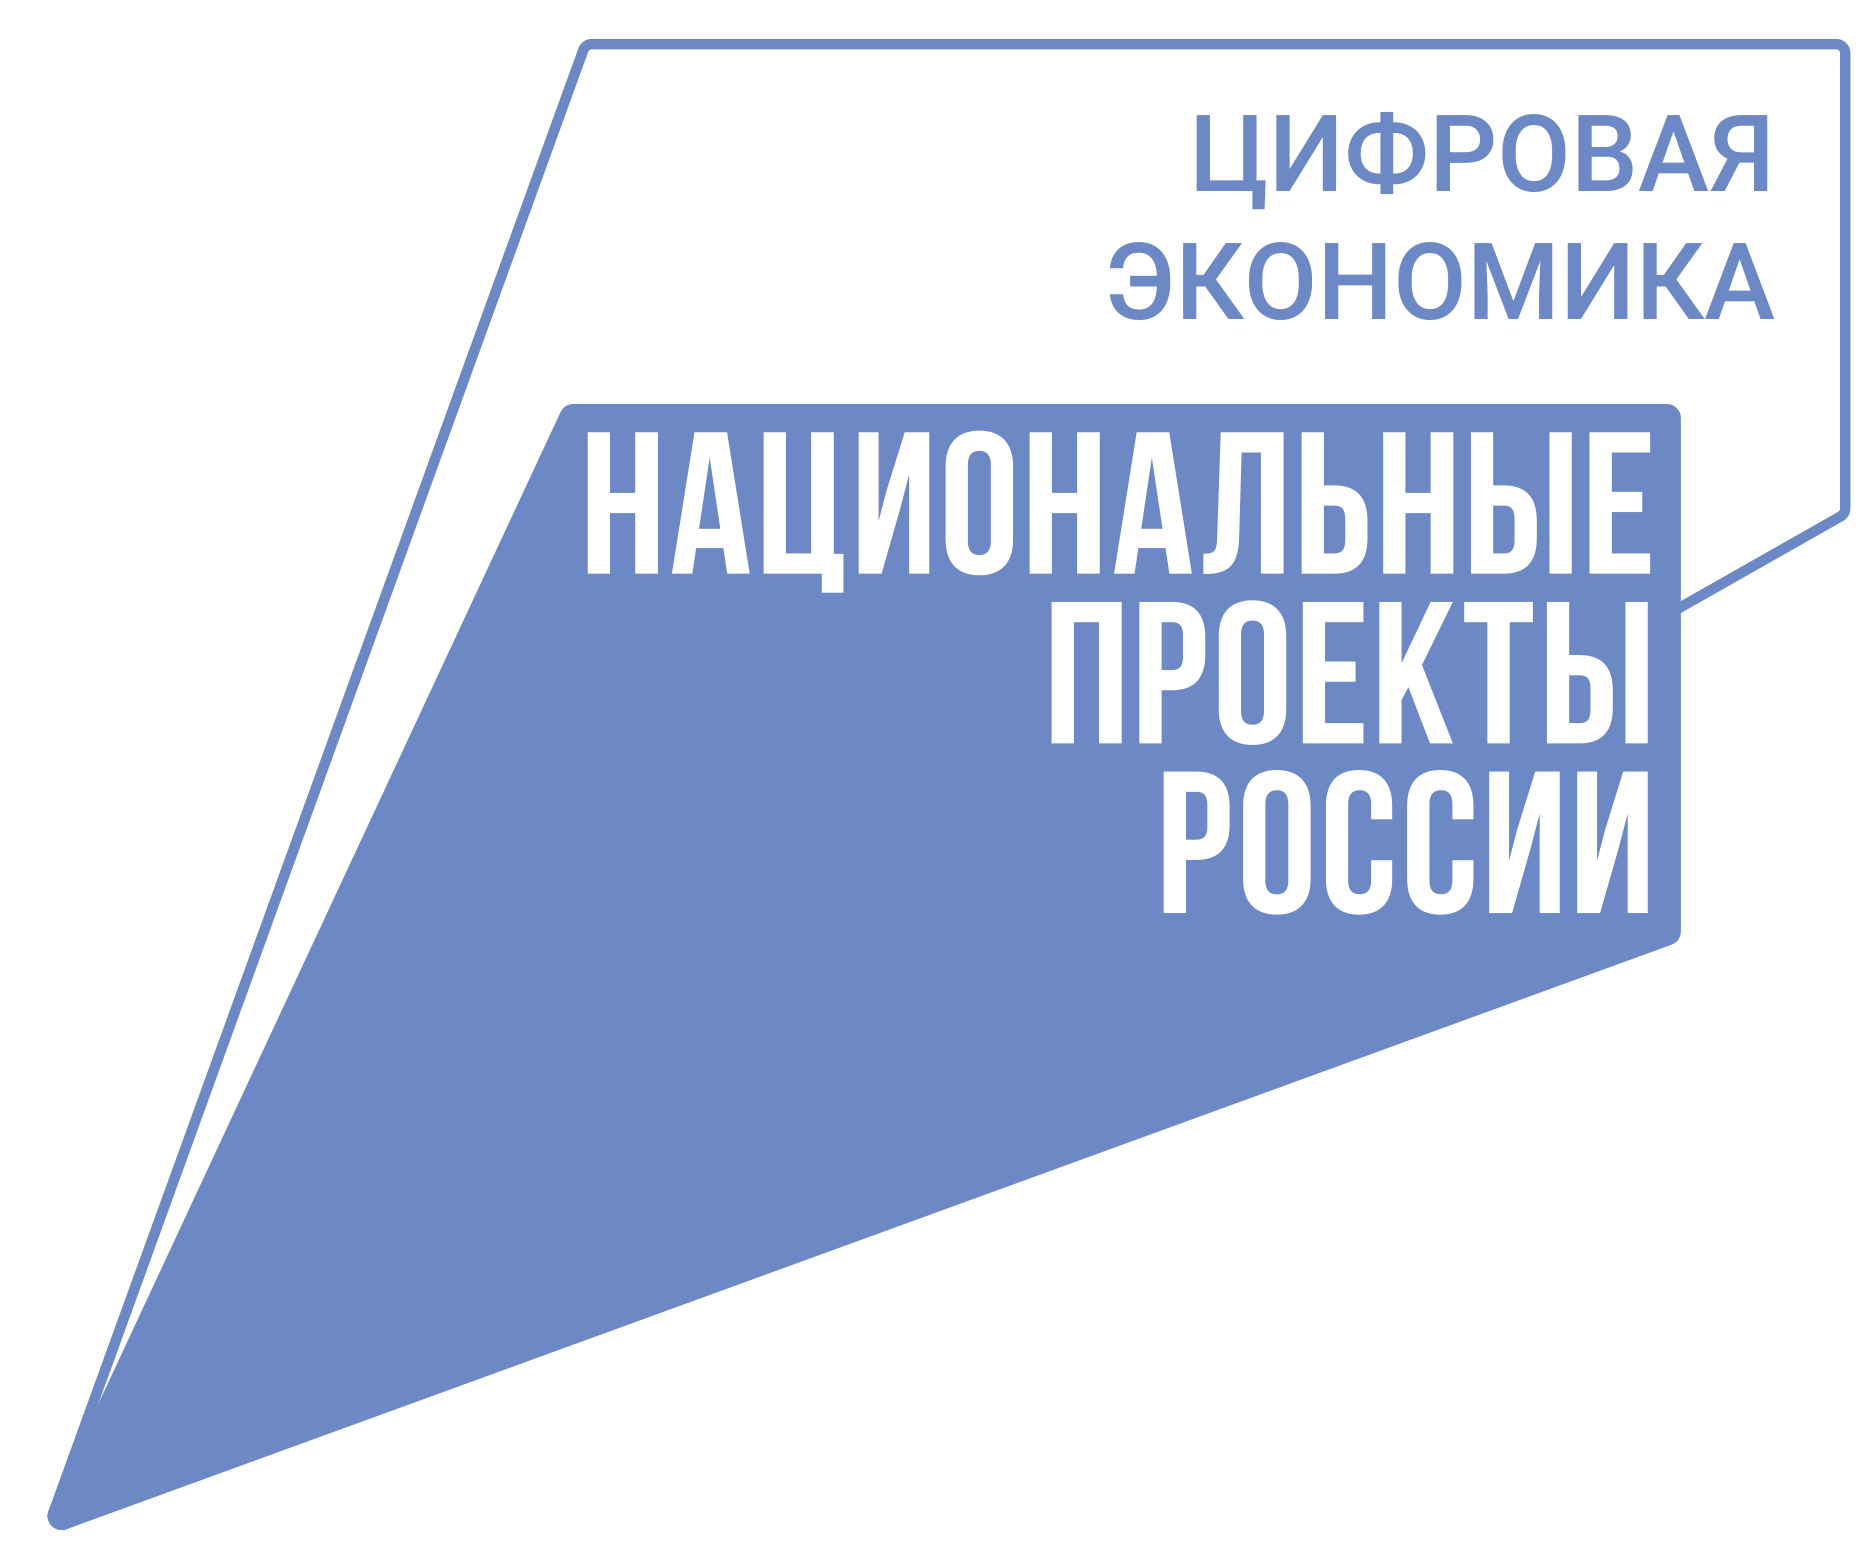 Мероприятия, направленные на цифровую трансформацию деятельности отраслей экономики и социальной сферы, институтов развития и муниципальных образований Ульяновской области, в период с 13 по 18 июня 2023 года, в рамках недели Цифровой экономики.